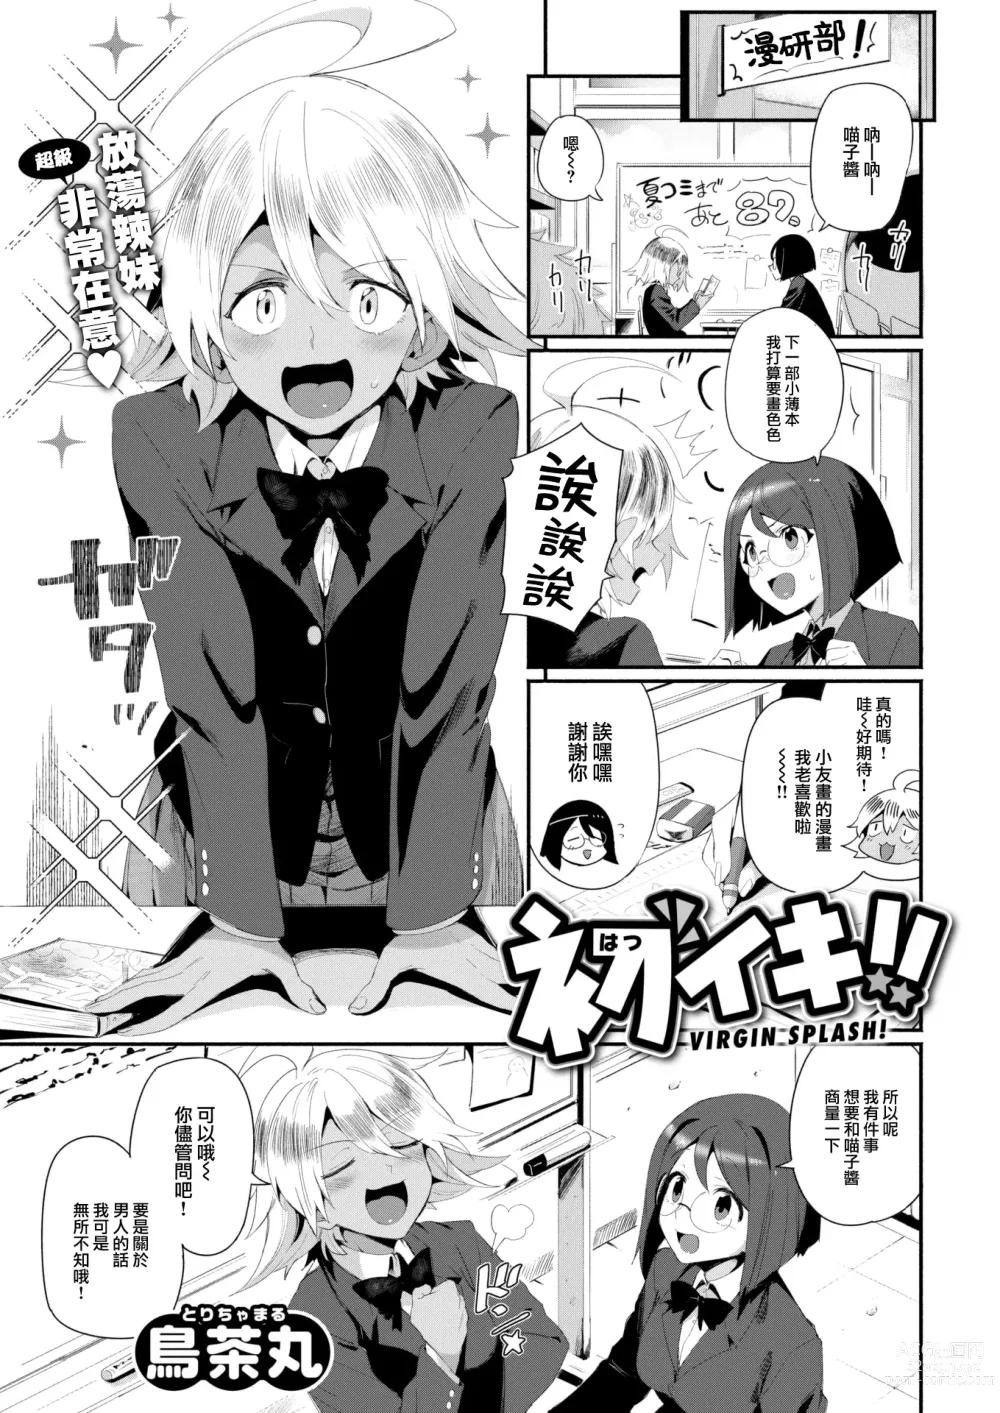 Page 2 of manga Hatsuiki!! - Virgin Splash!